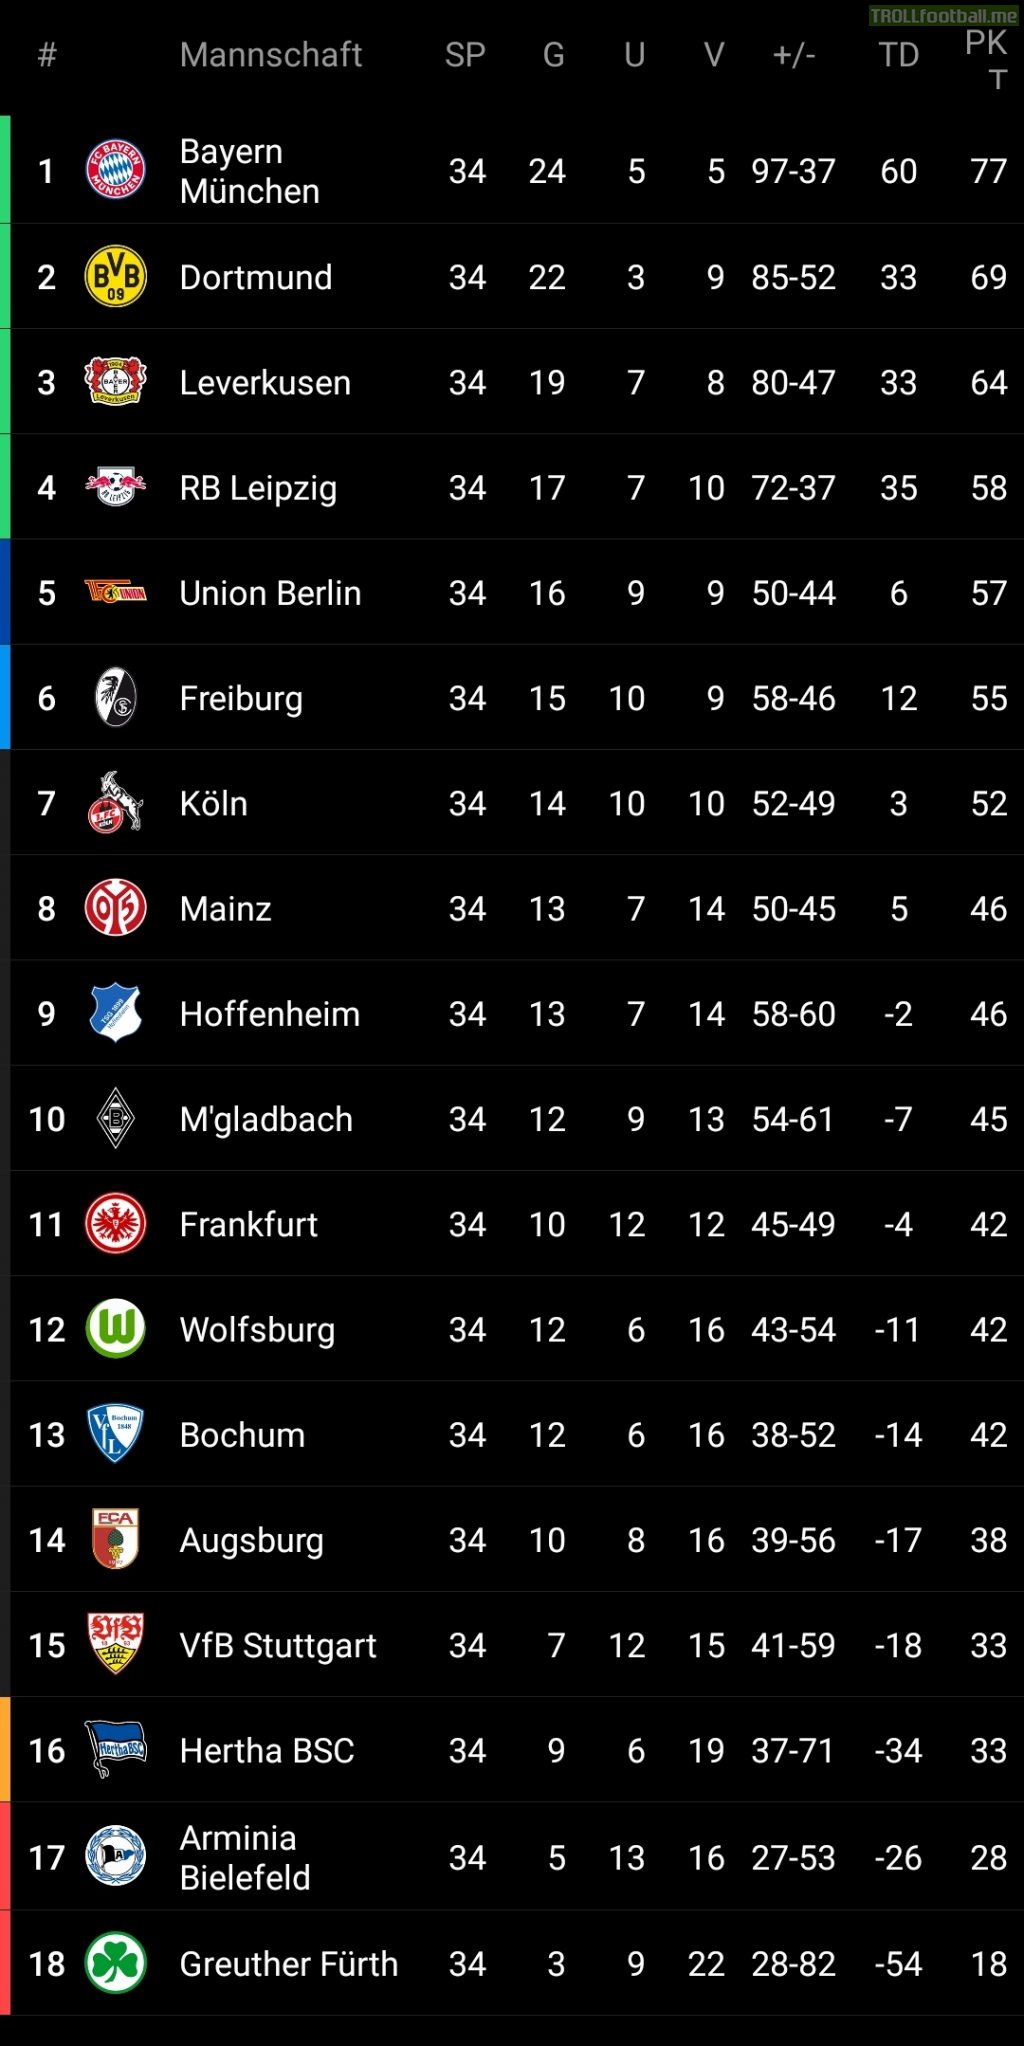 Bundesliga table after final matchday